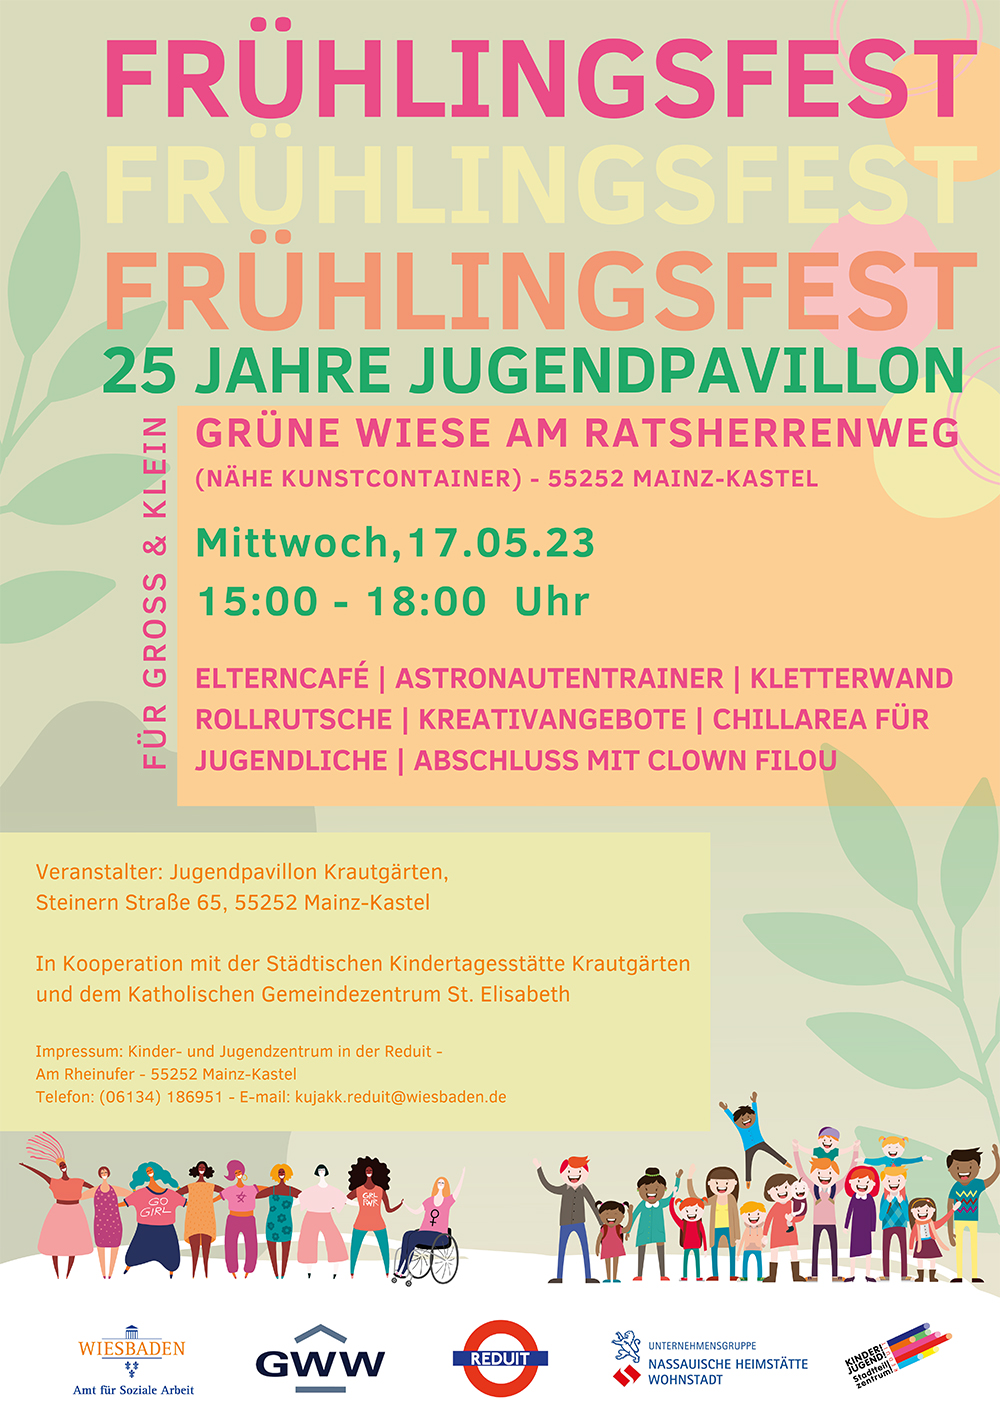 FrÃ¼hlingsfest Jugendpavillon KrautgÃ¤rten 2023 . 25 Jahre Jugendpavillon . Mittwoch, 17. Mai 2023 . Kinder- und Jugendzentrum in der Reduit Mainz-Kastel